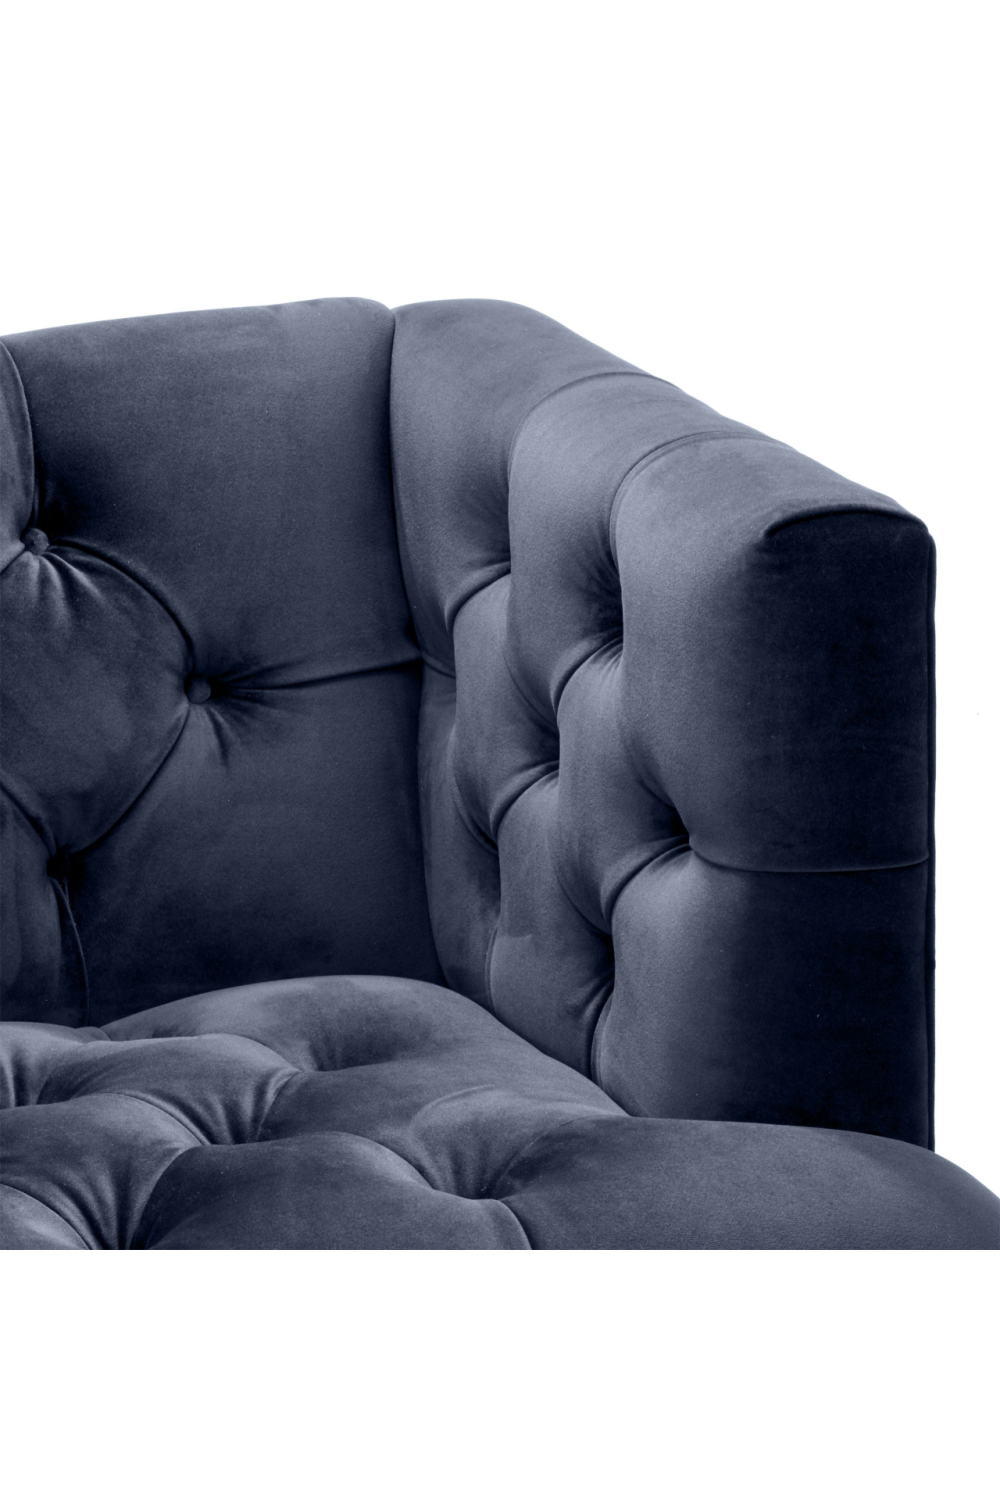 Blue Velvet Tufted Chair | Eichholtz Castelle | Oroa.com